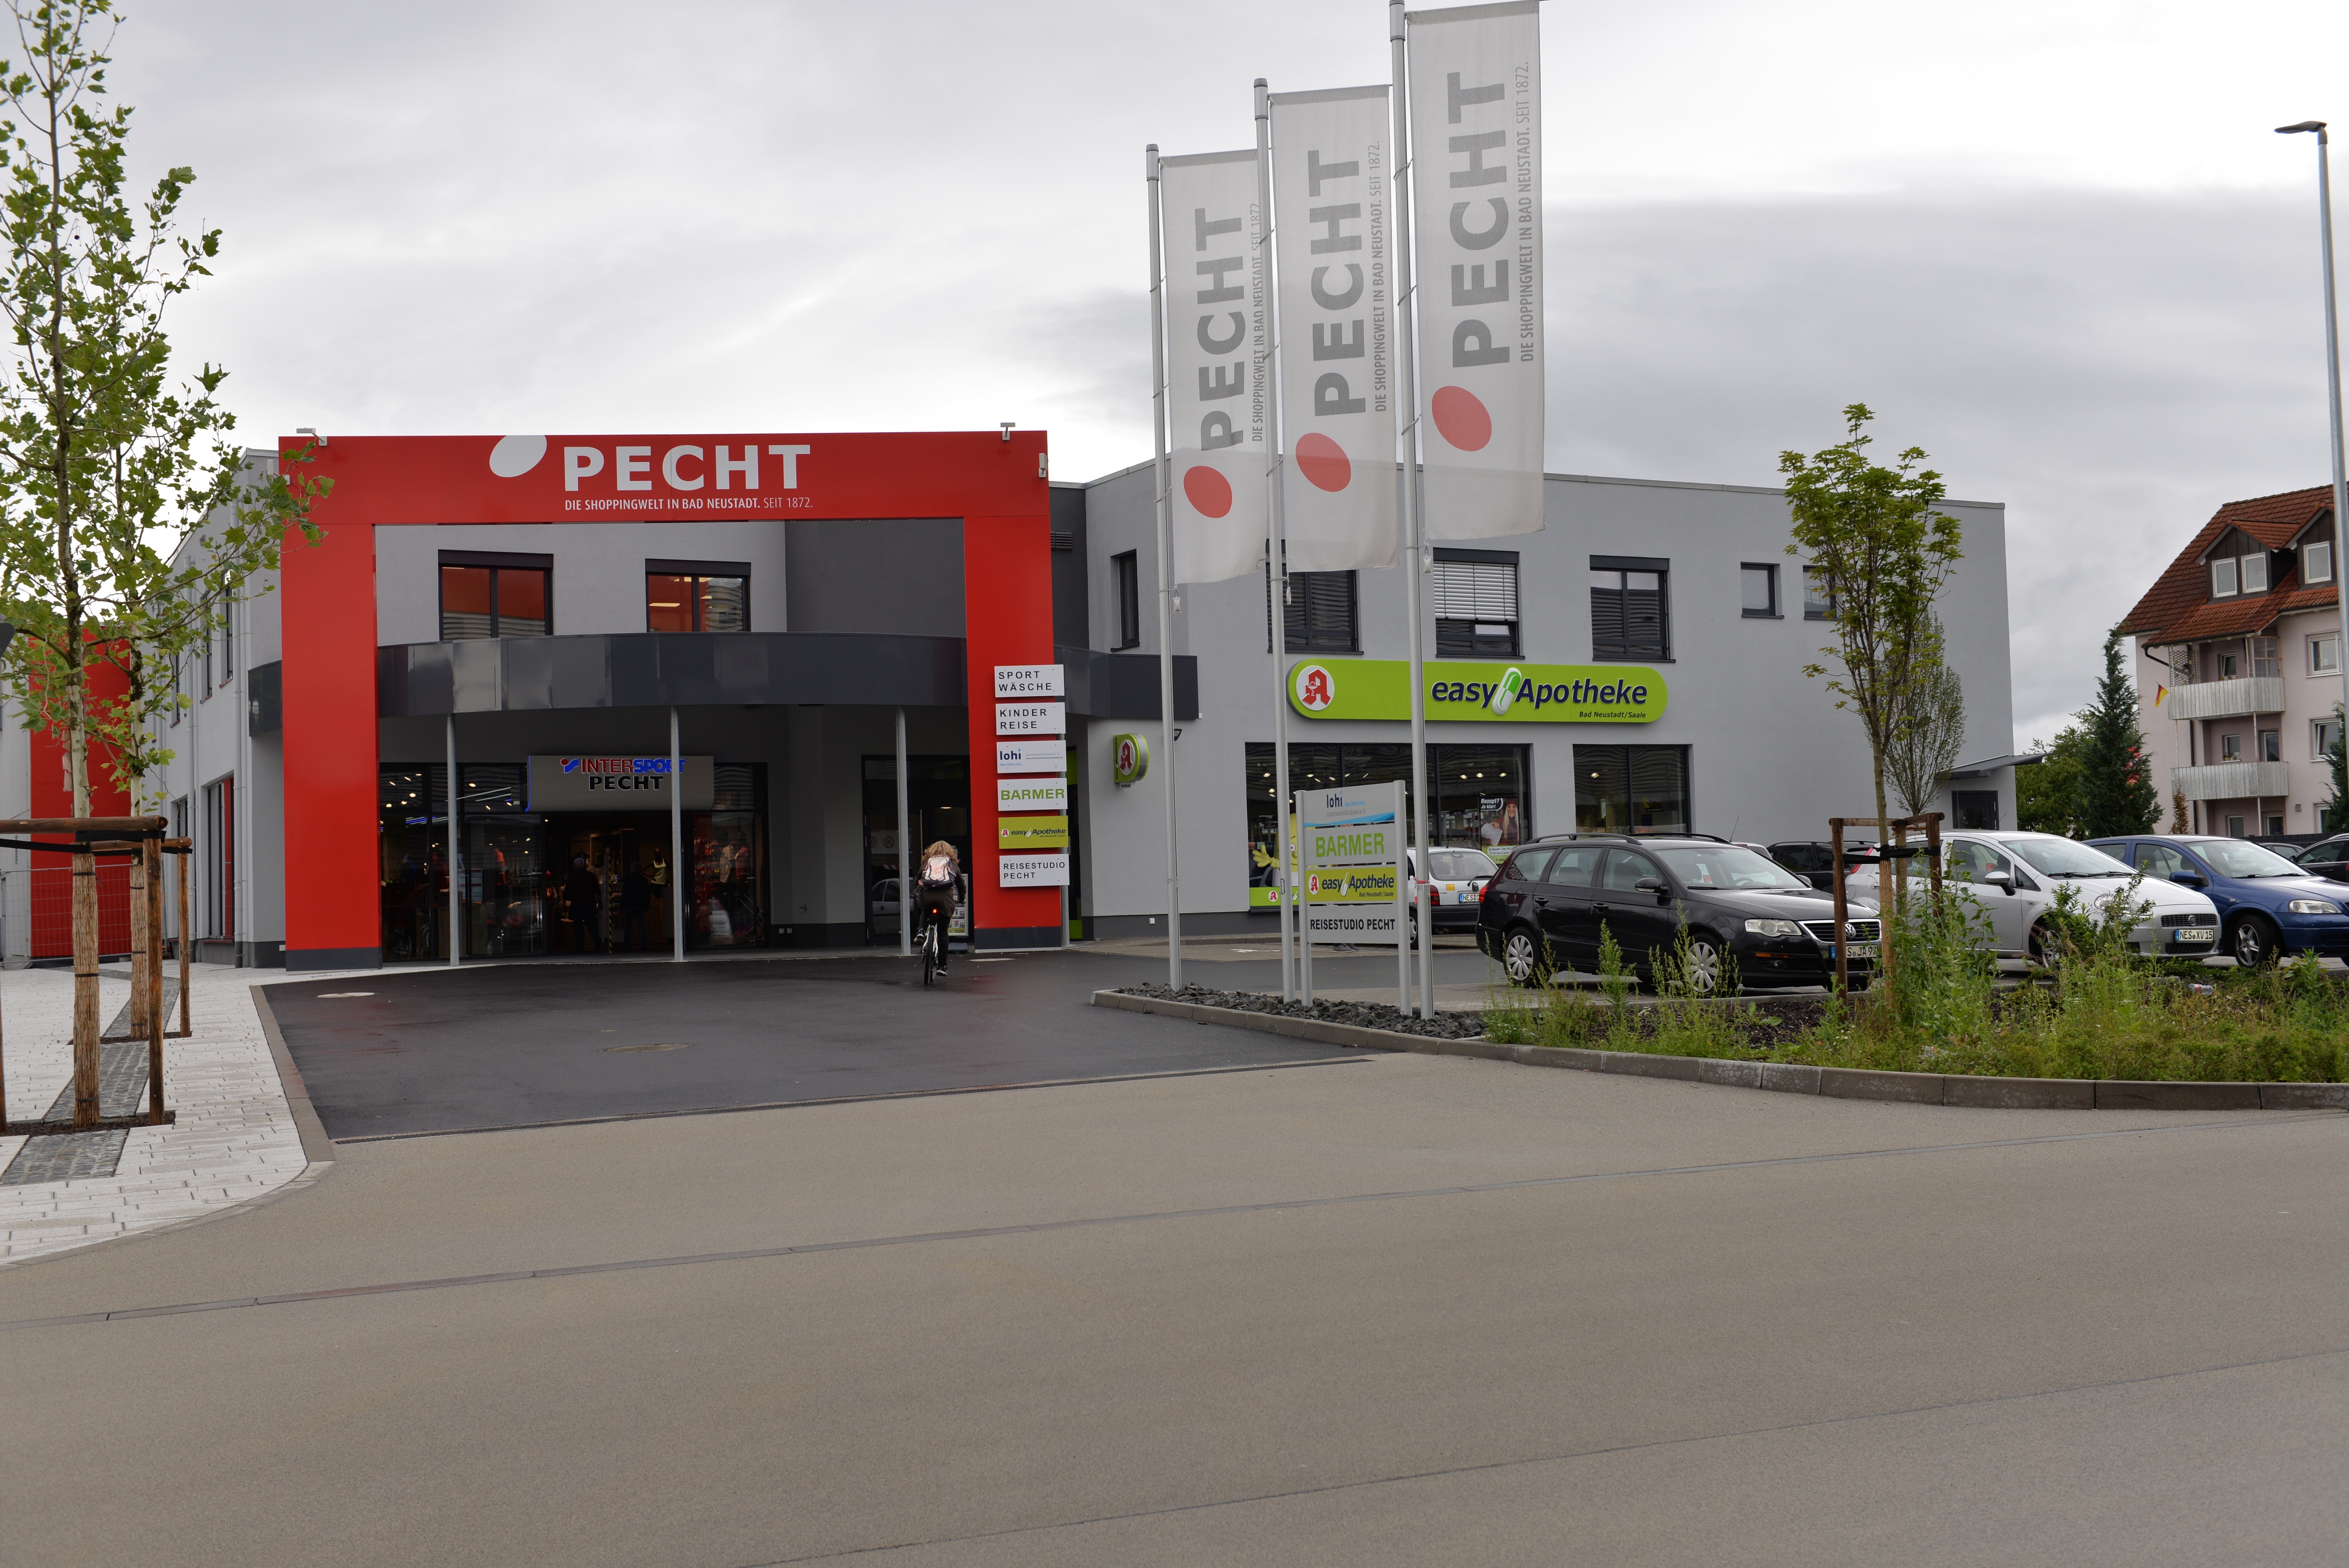 Bild der PECHT Shoppingwelt - Einkaufszentrum in Bad Neustadt